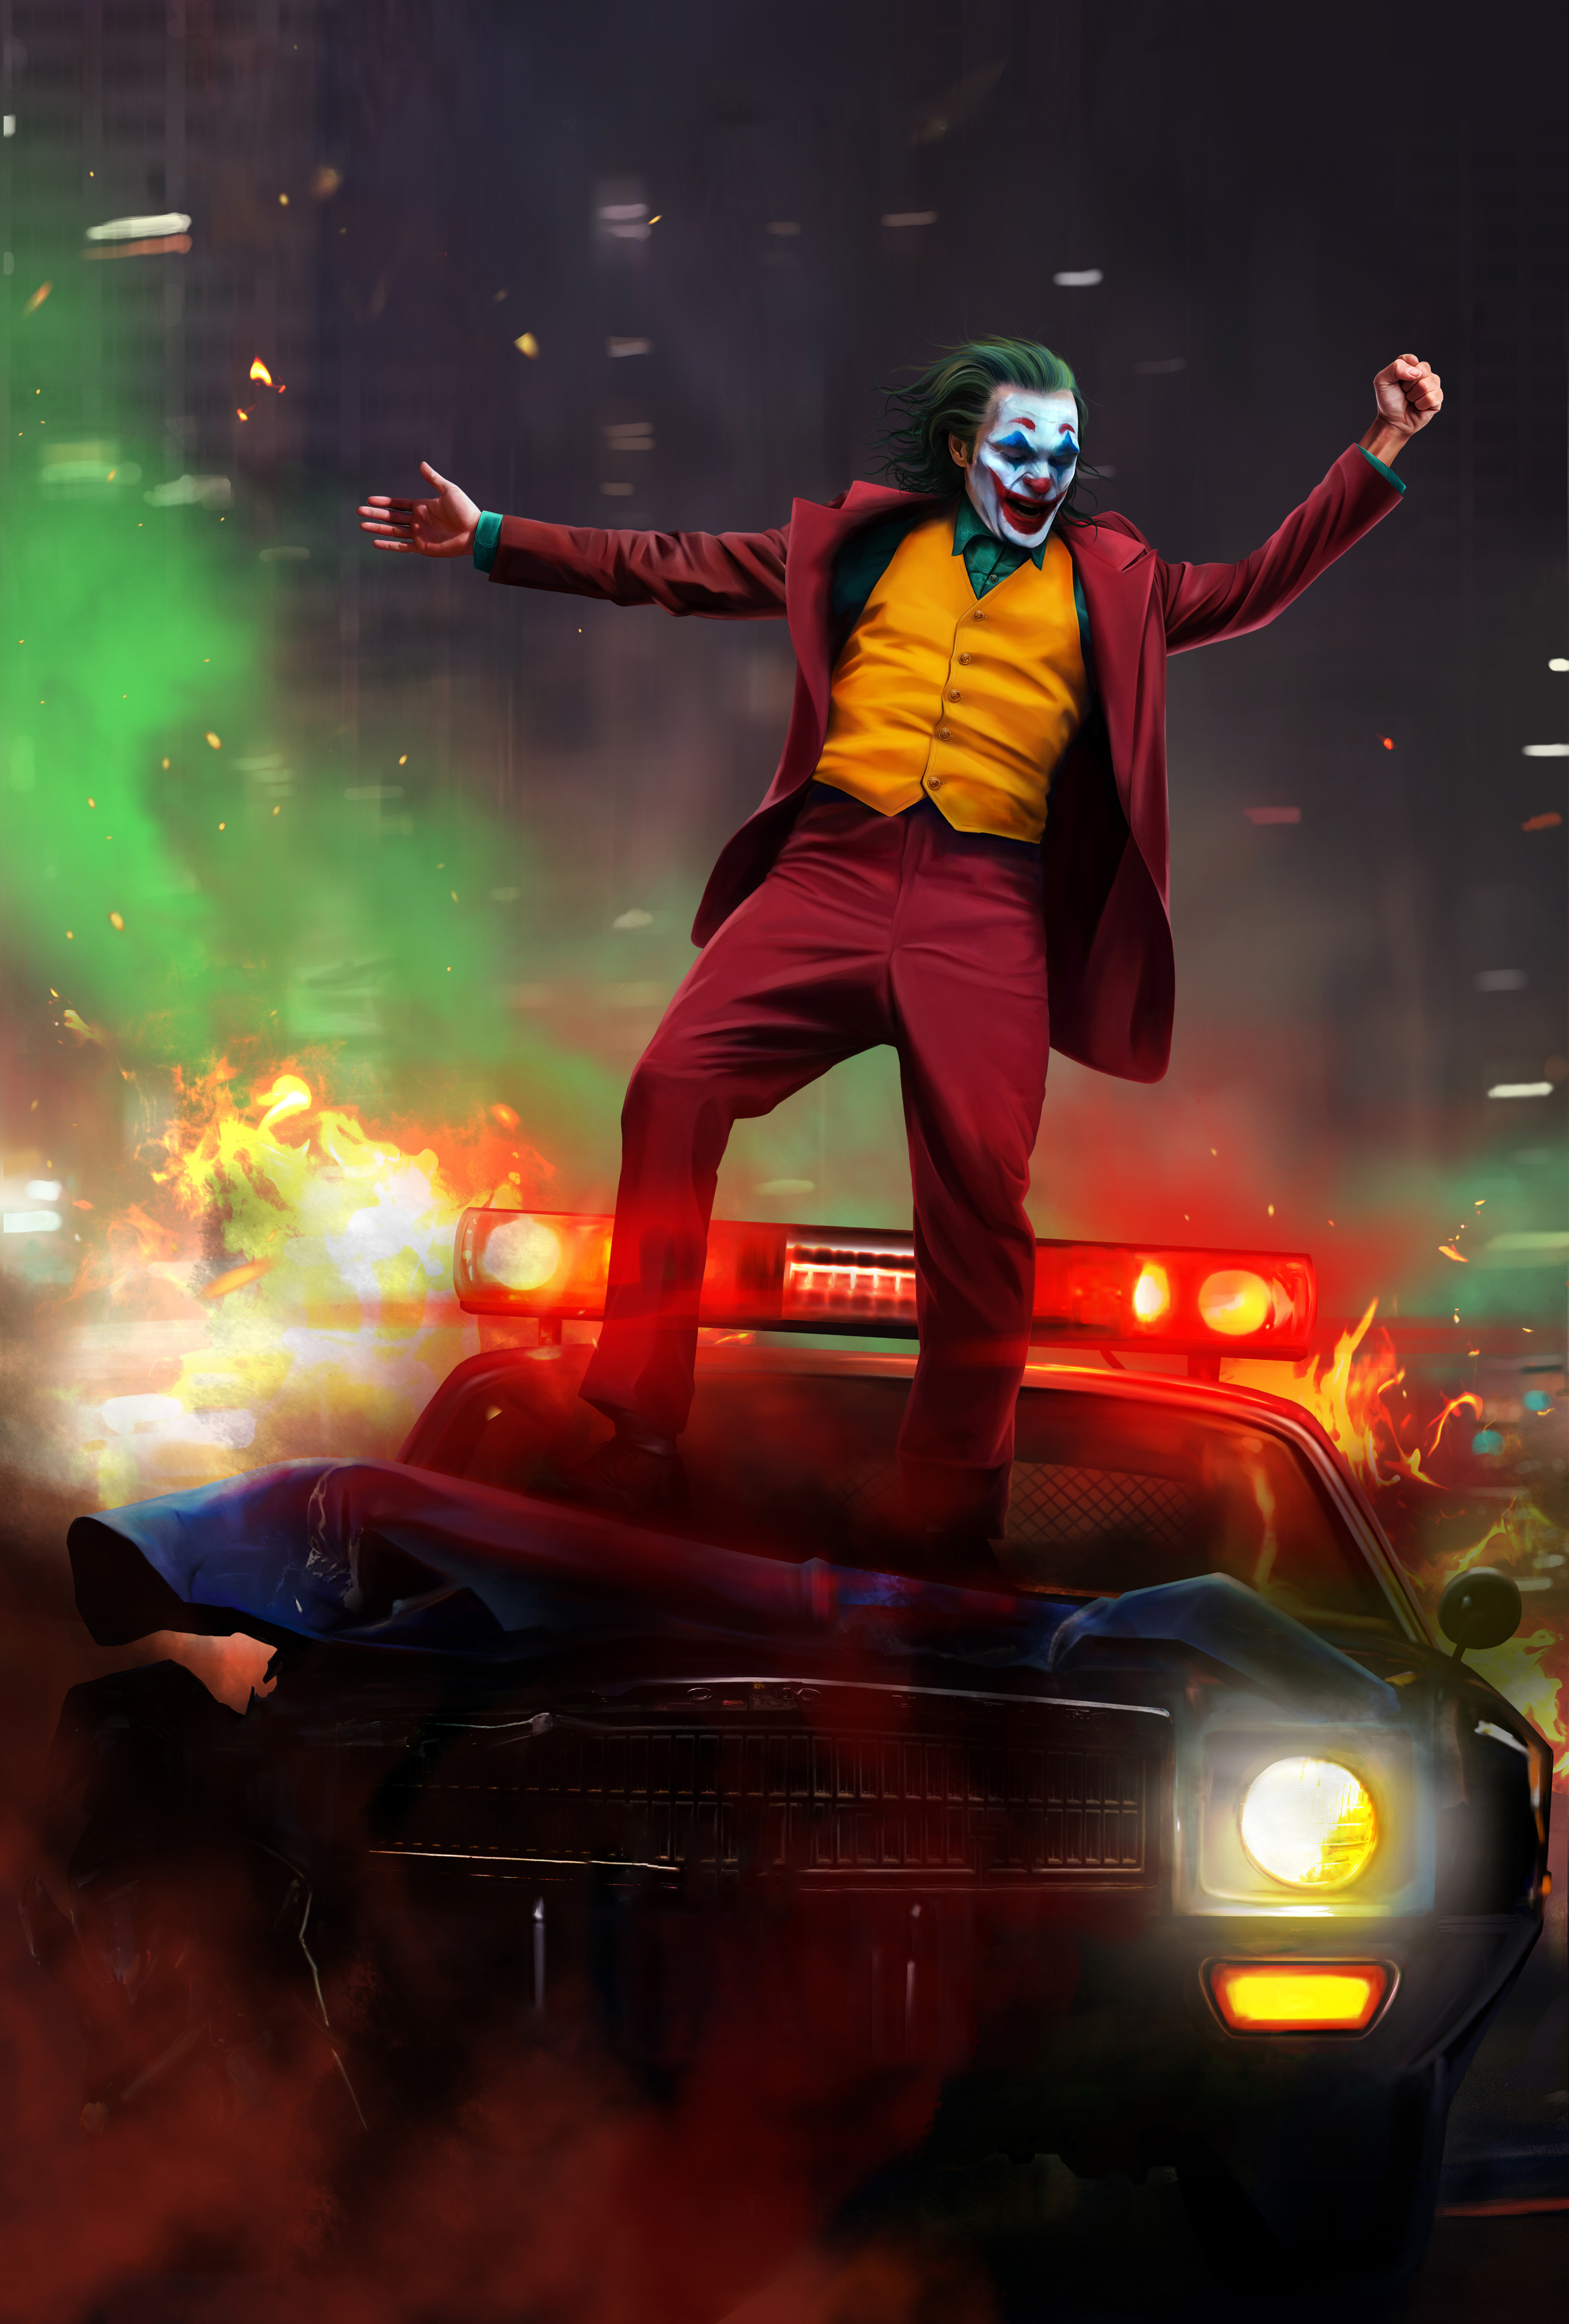 Joker 2019 Artwork Wallpaper, HD Artist 4K Wallpapers, Images, Photos